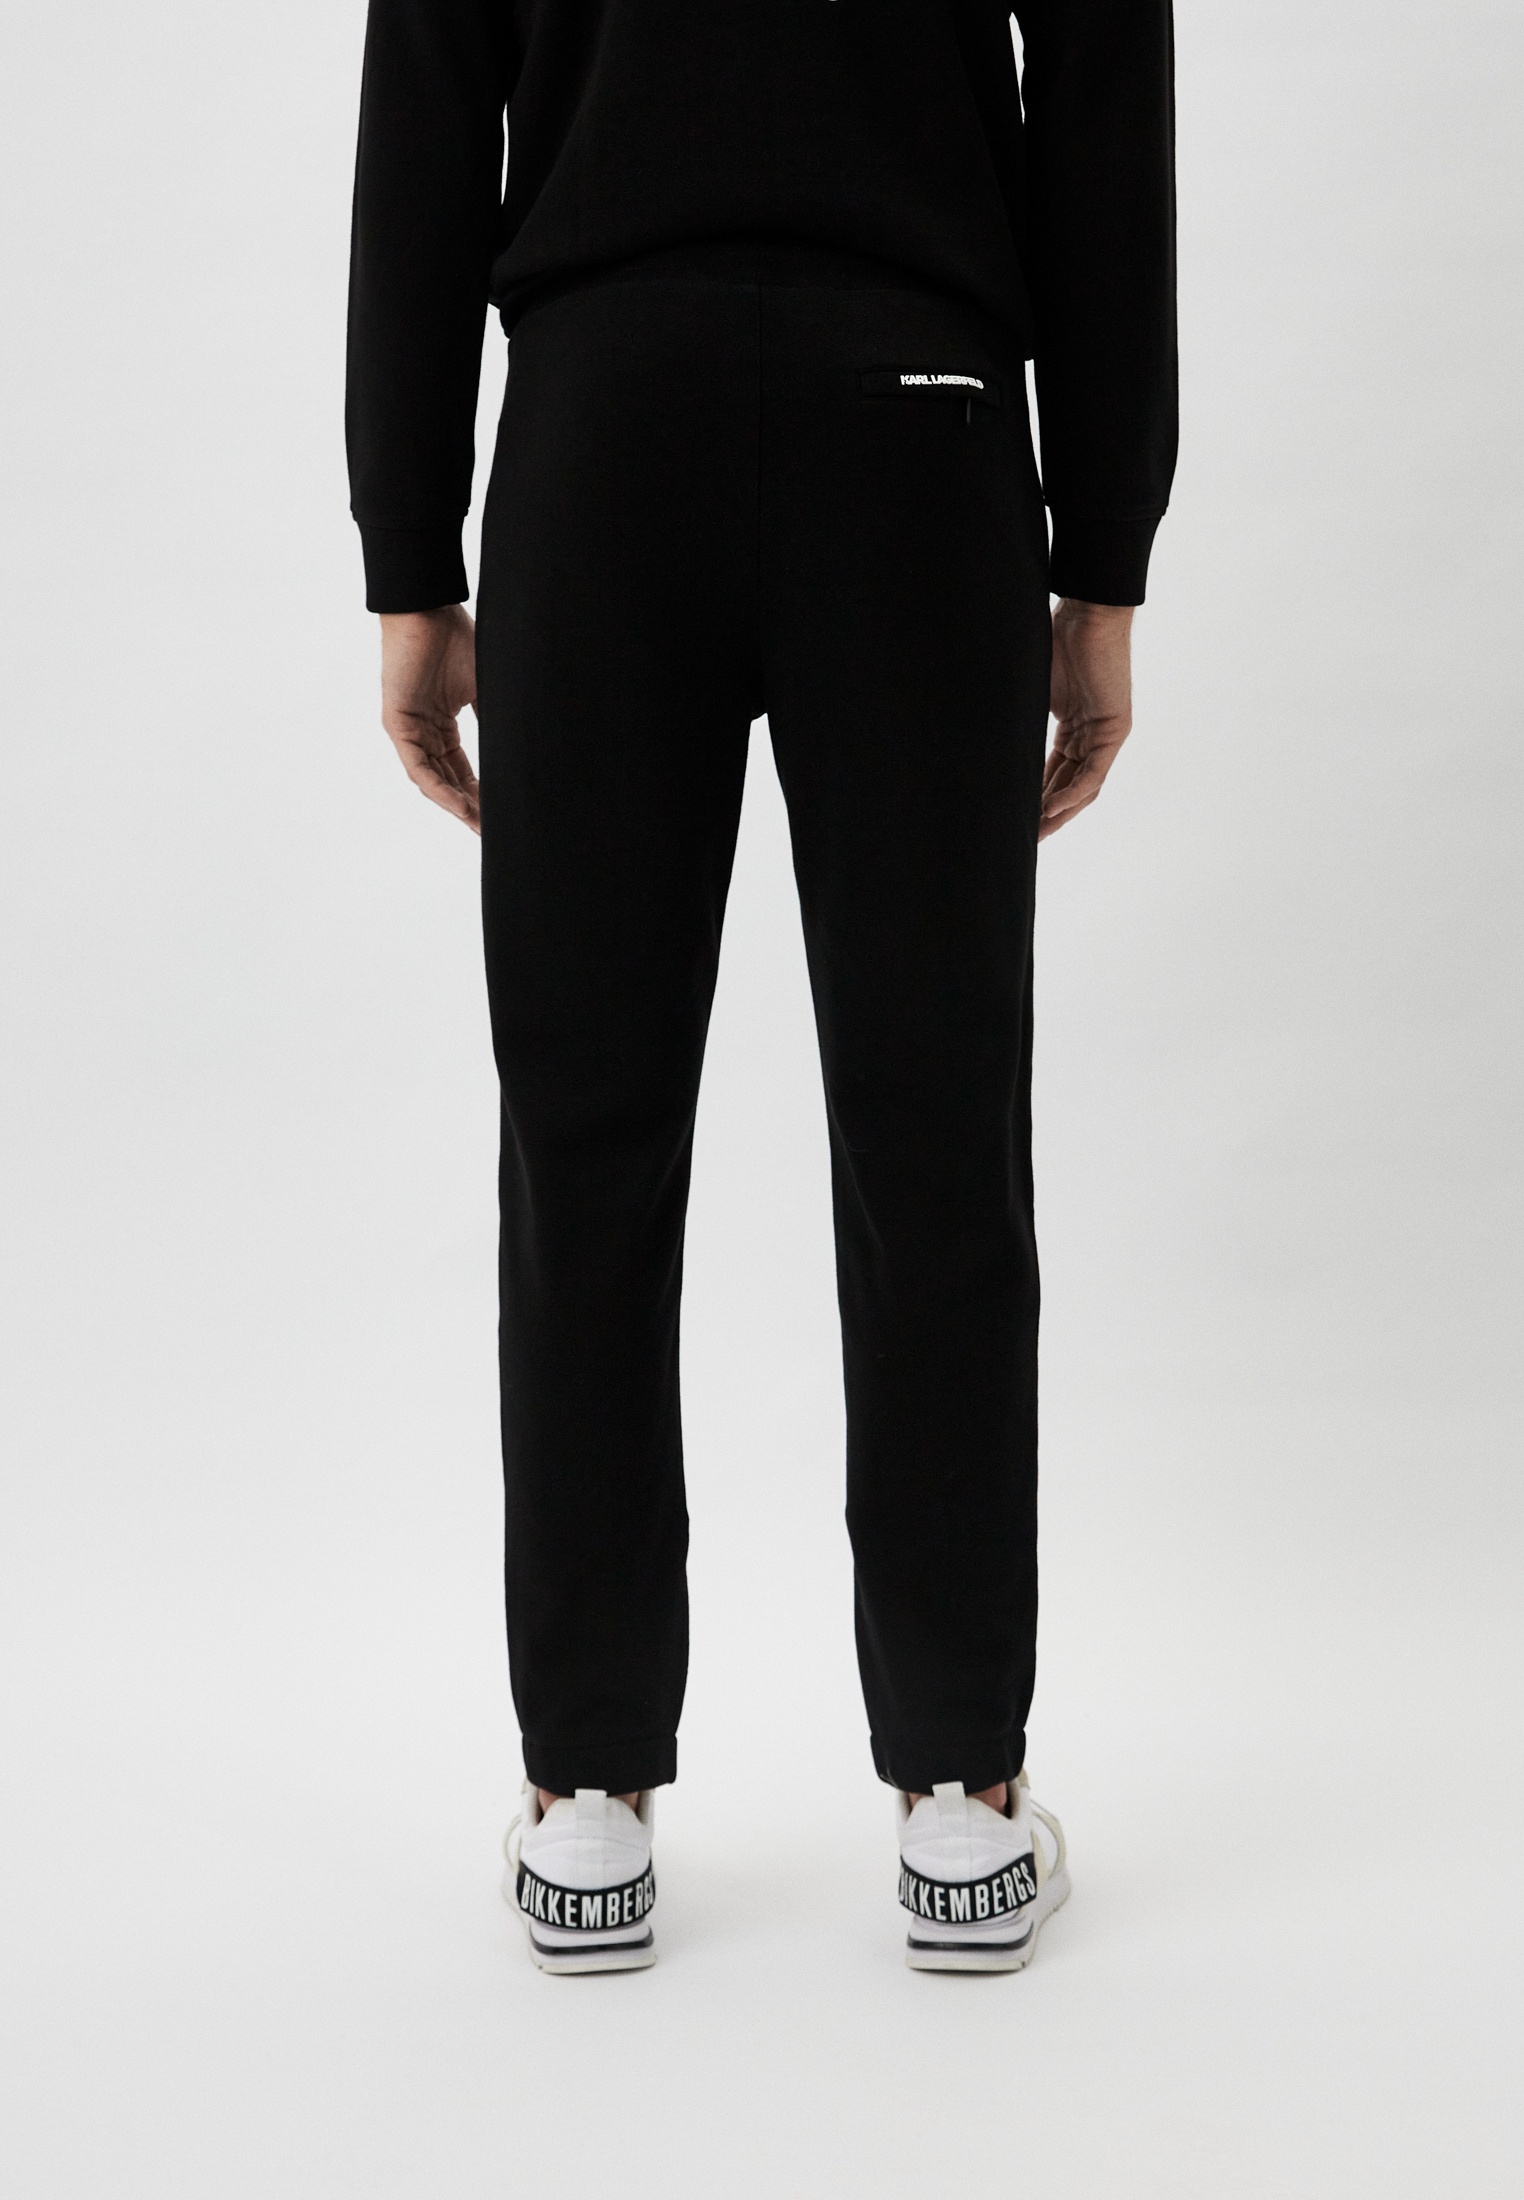 Мужские спортивные брюки Karl Lagerfeld (Карл Лагерфельд) 705073-541900: изображение 3